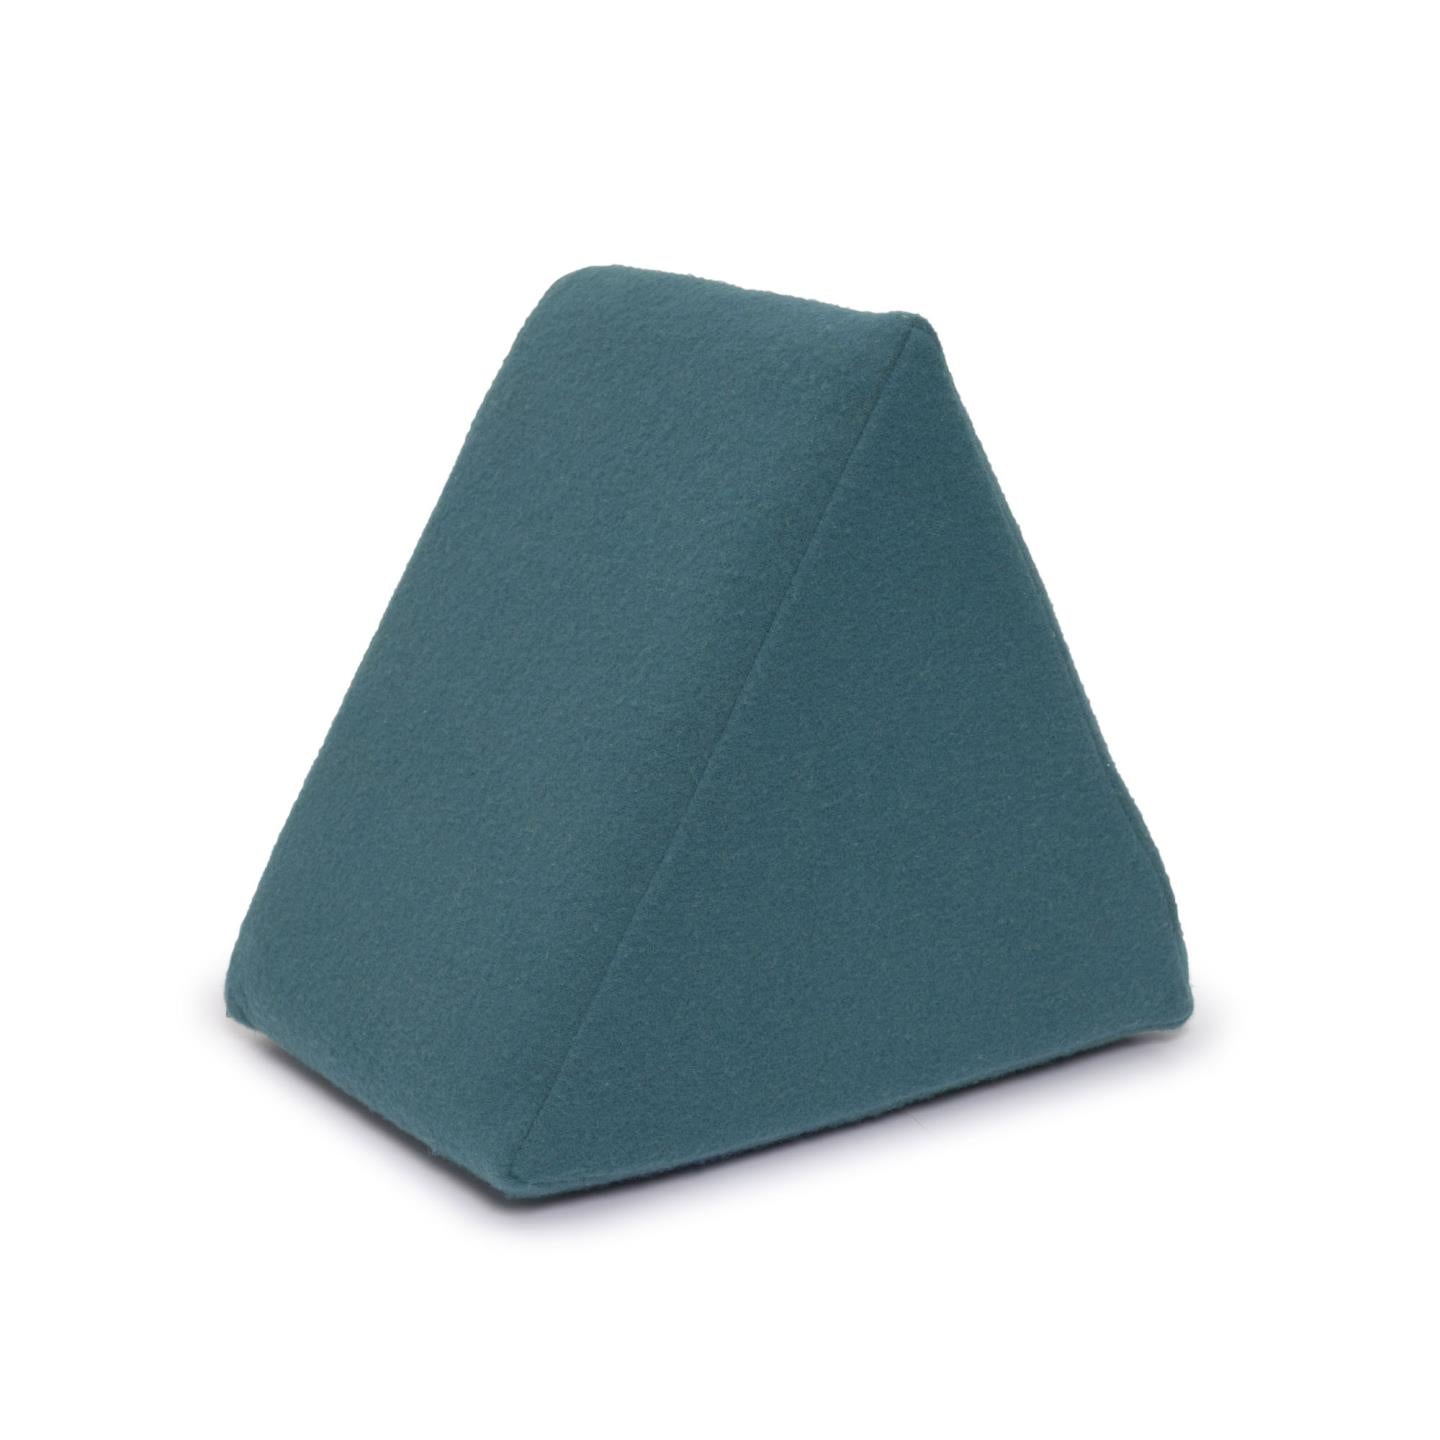 Jalila triangular pouffe in blue 25 x 25 cm